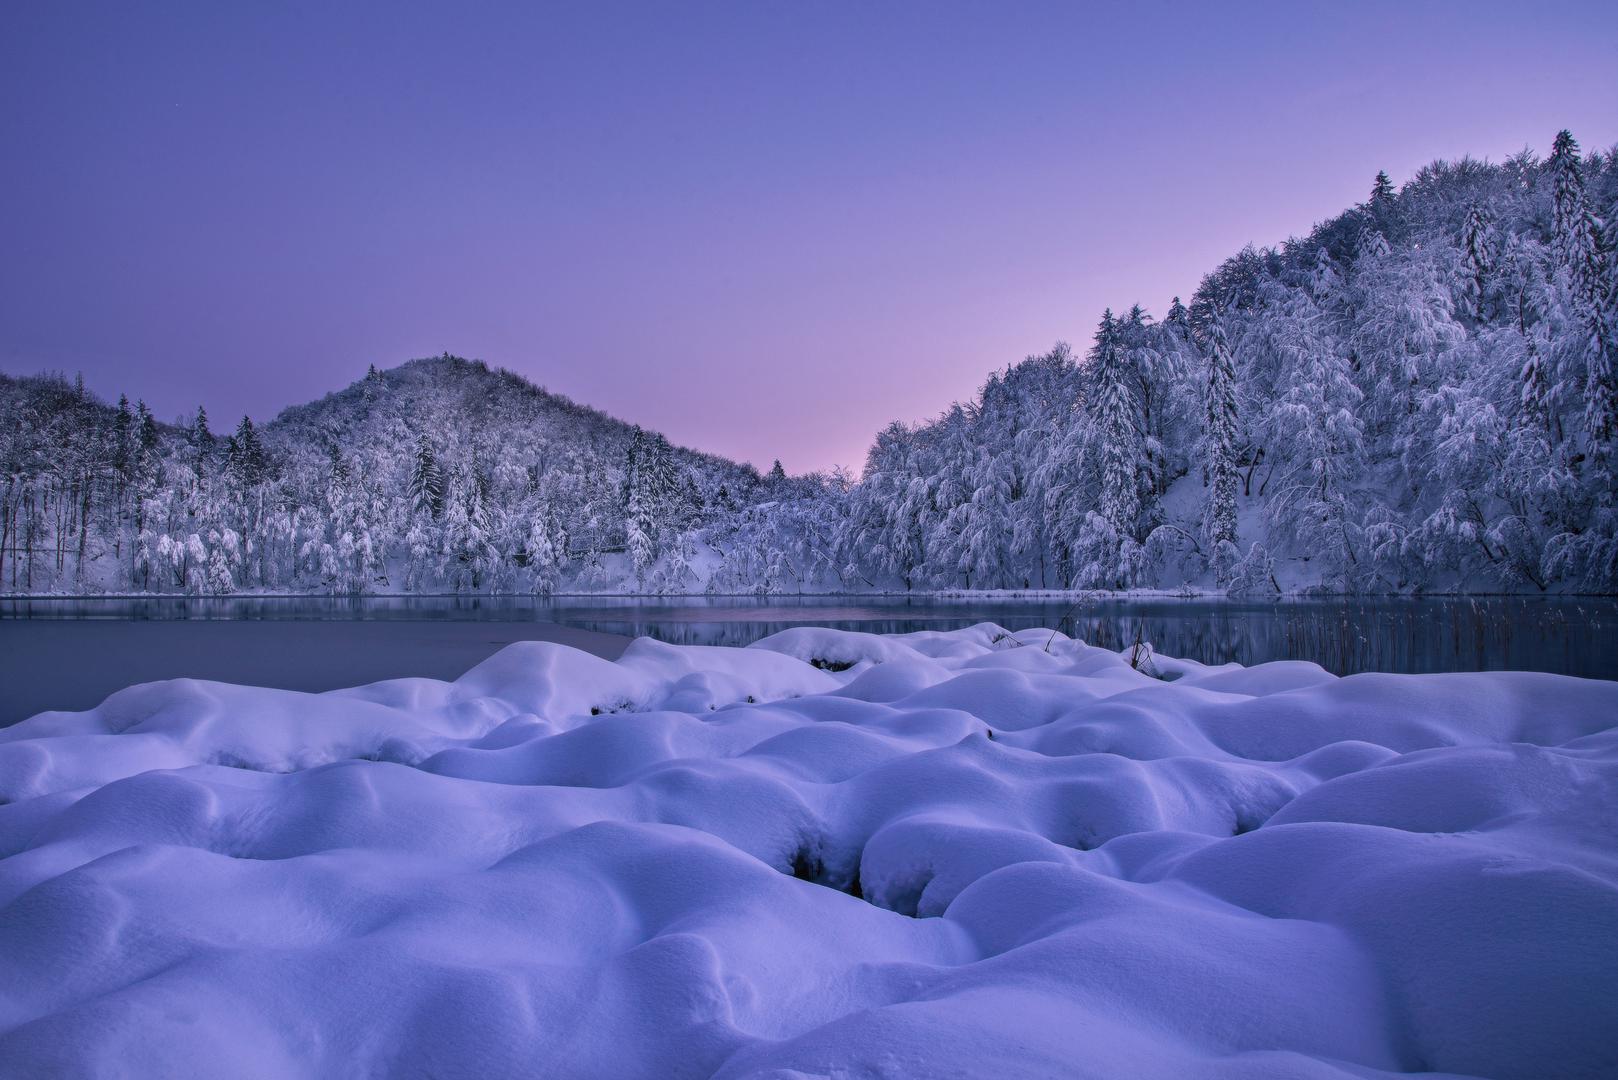 Prizori na Plitvičkim jezerima spektakularni su cijele godine, no snježni pokrivač posebna je atrakcija.